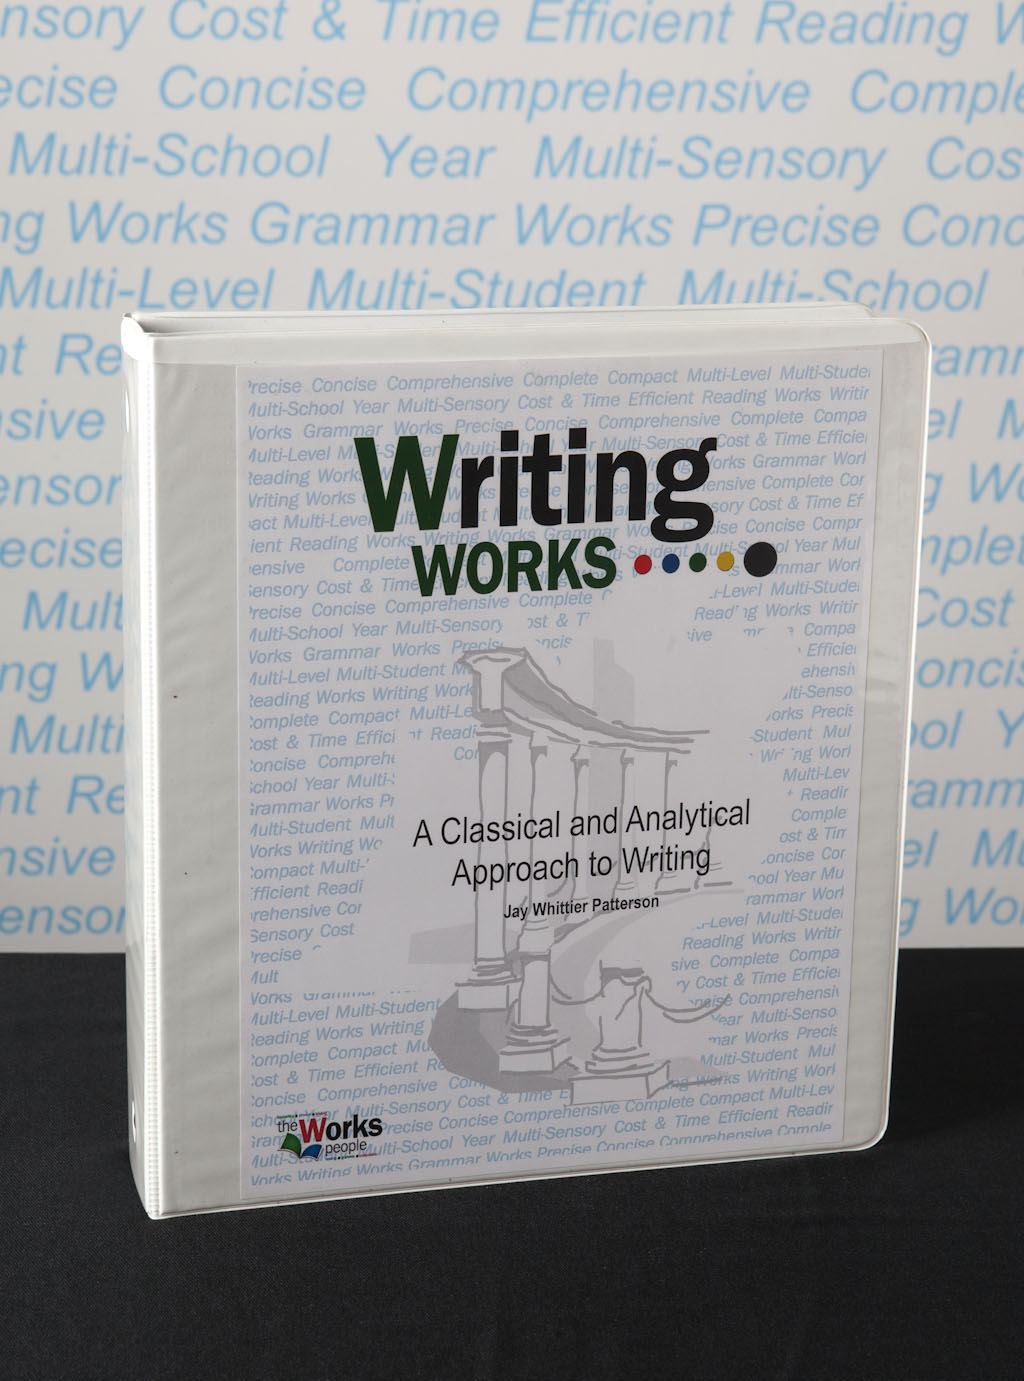 WritingWorksManual